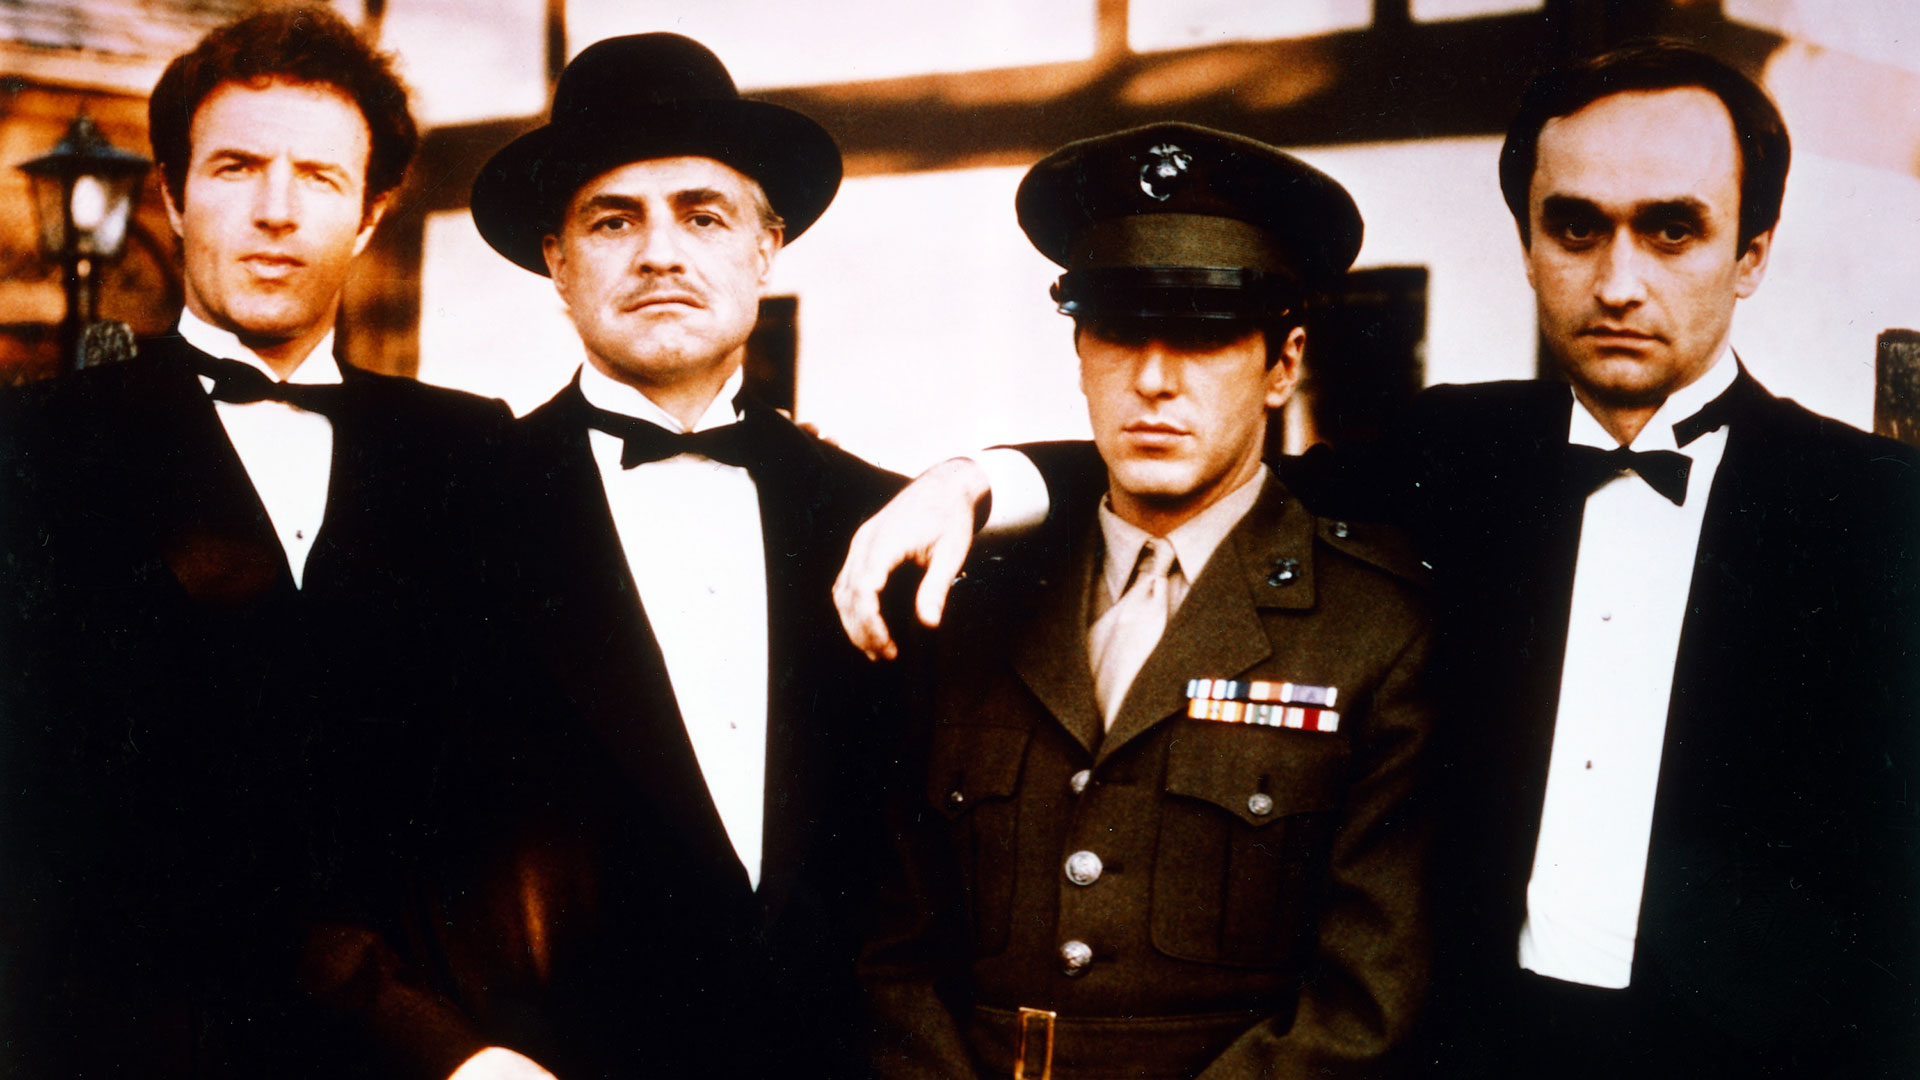 James Caan, Marlon Brando, Al Pacino y John Cazale en "The Godfather", 1972 (Getty Images)